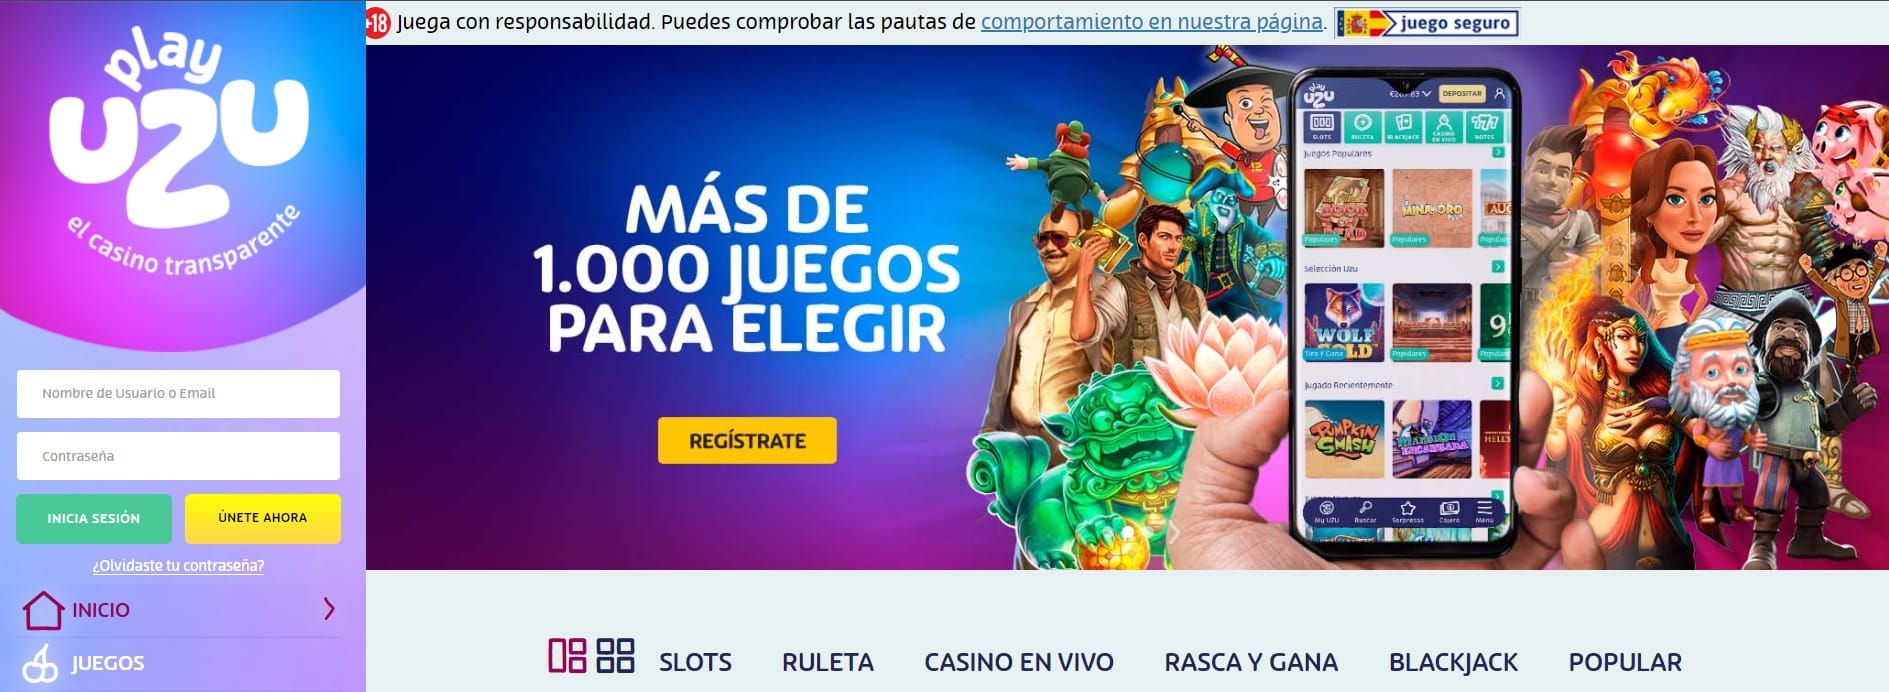 playuzu casino online legal espana